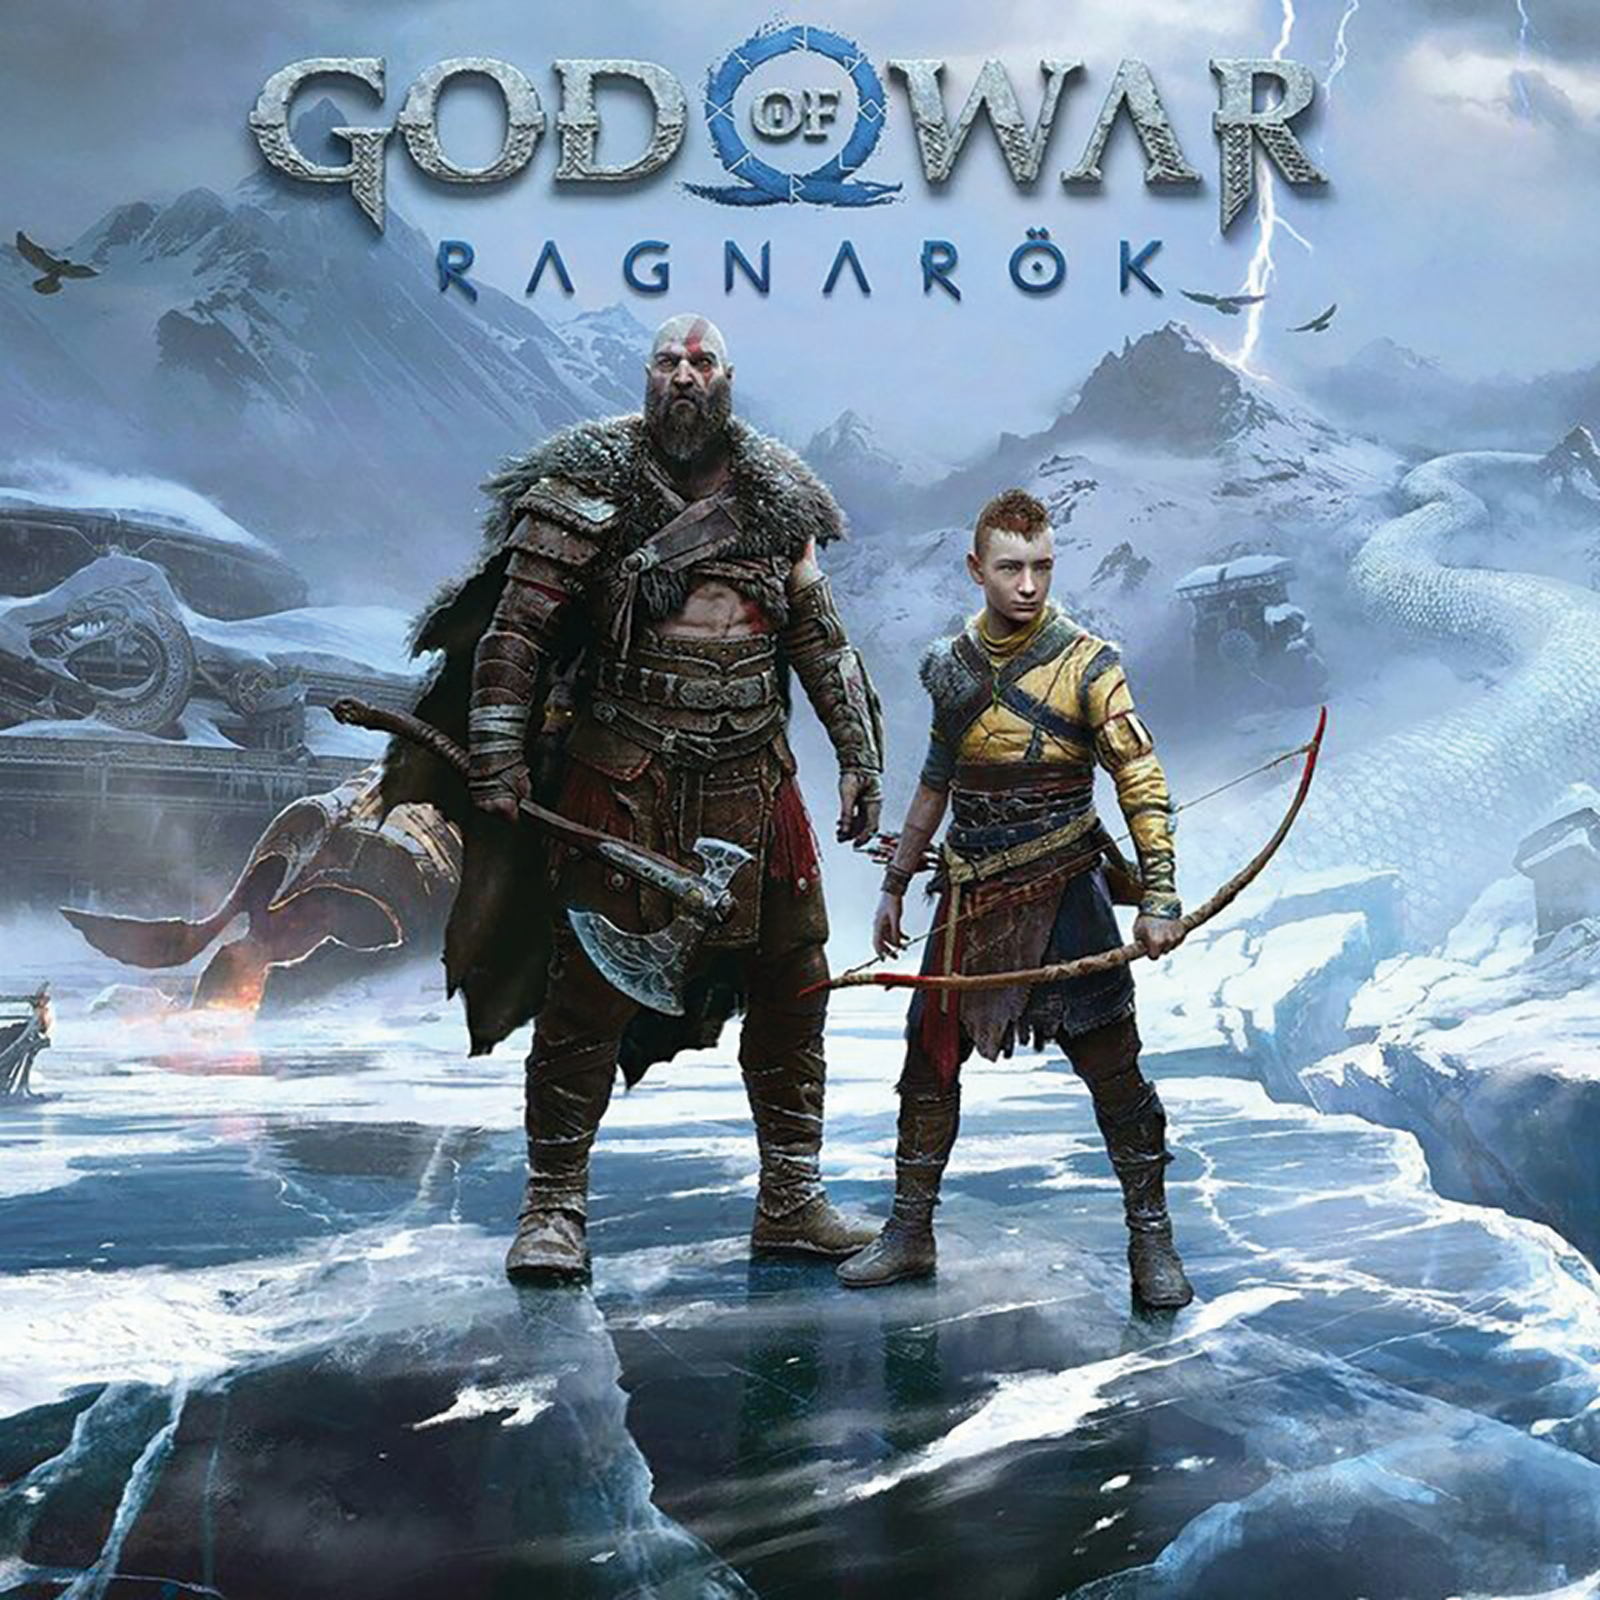 “God of War: Ragnarök”